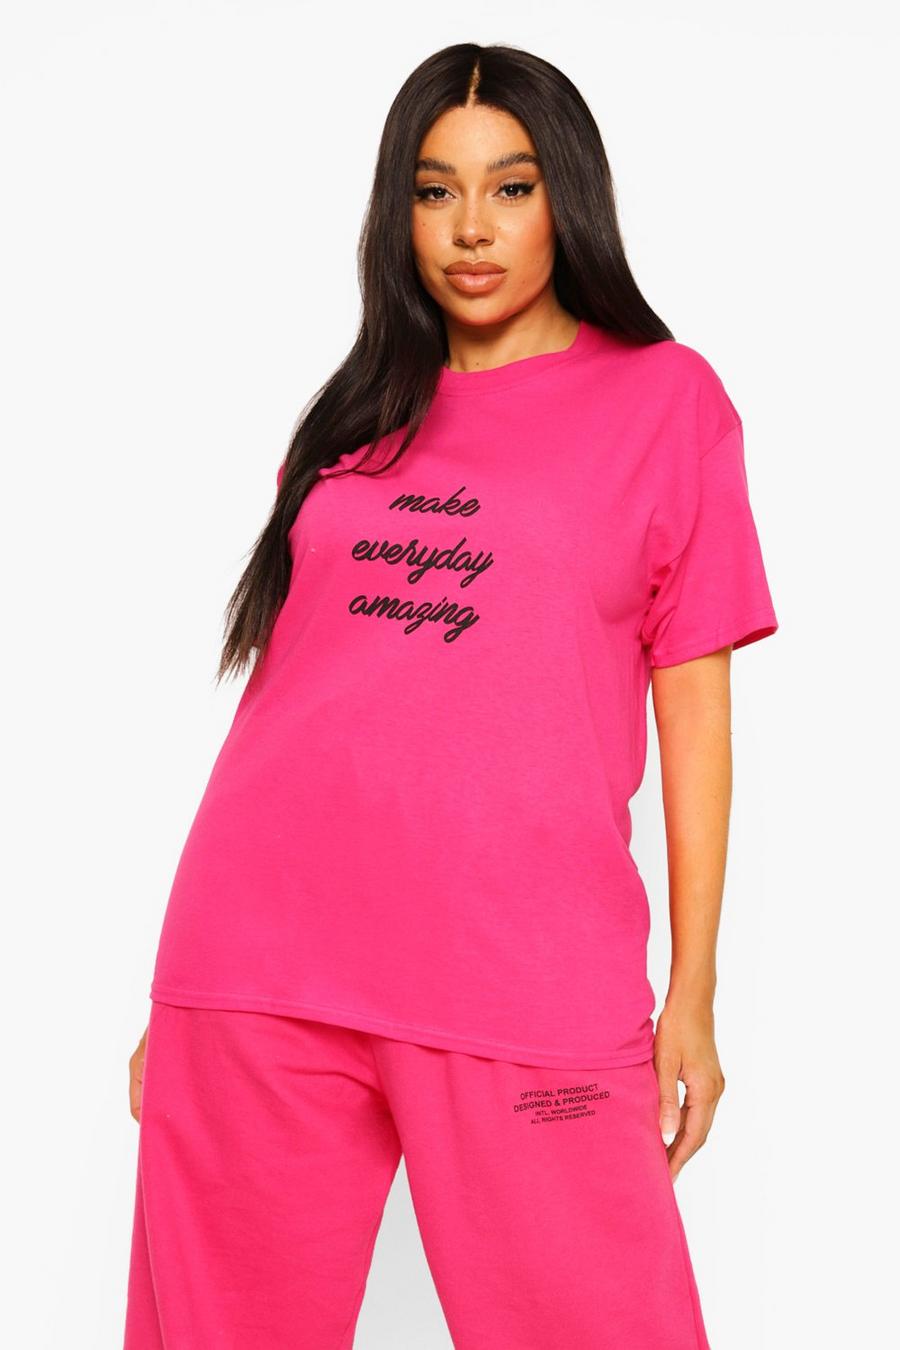 Camiseta Plus con eslogan Amazing, Pink rosa image number 1